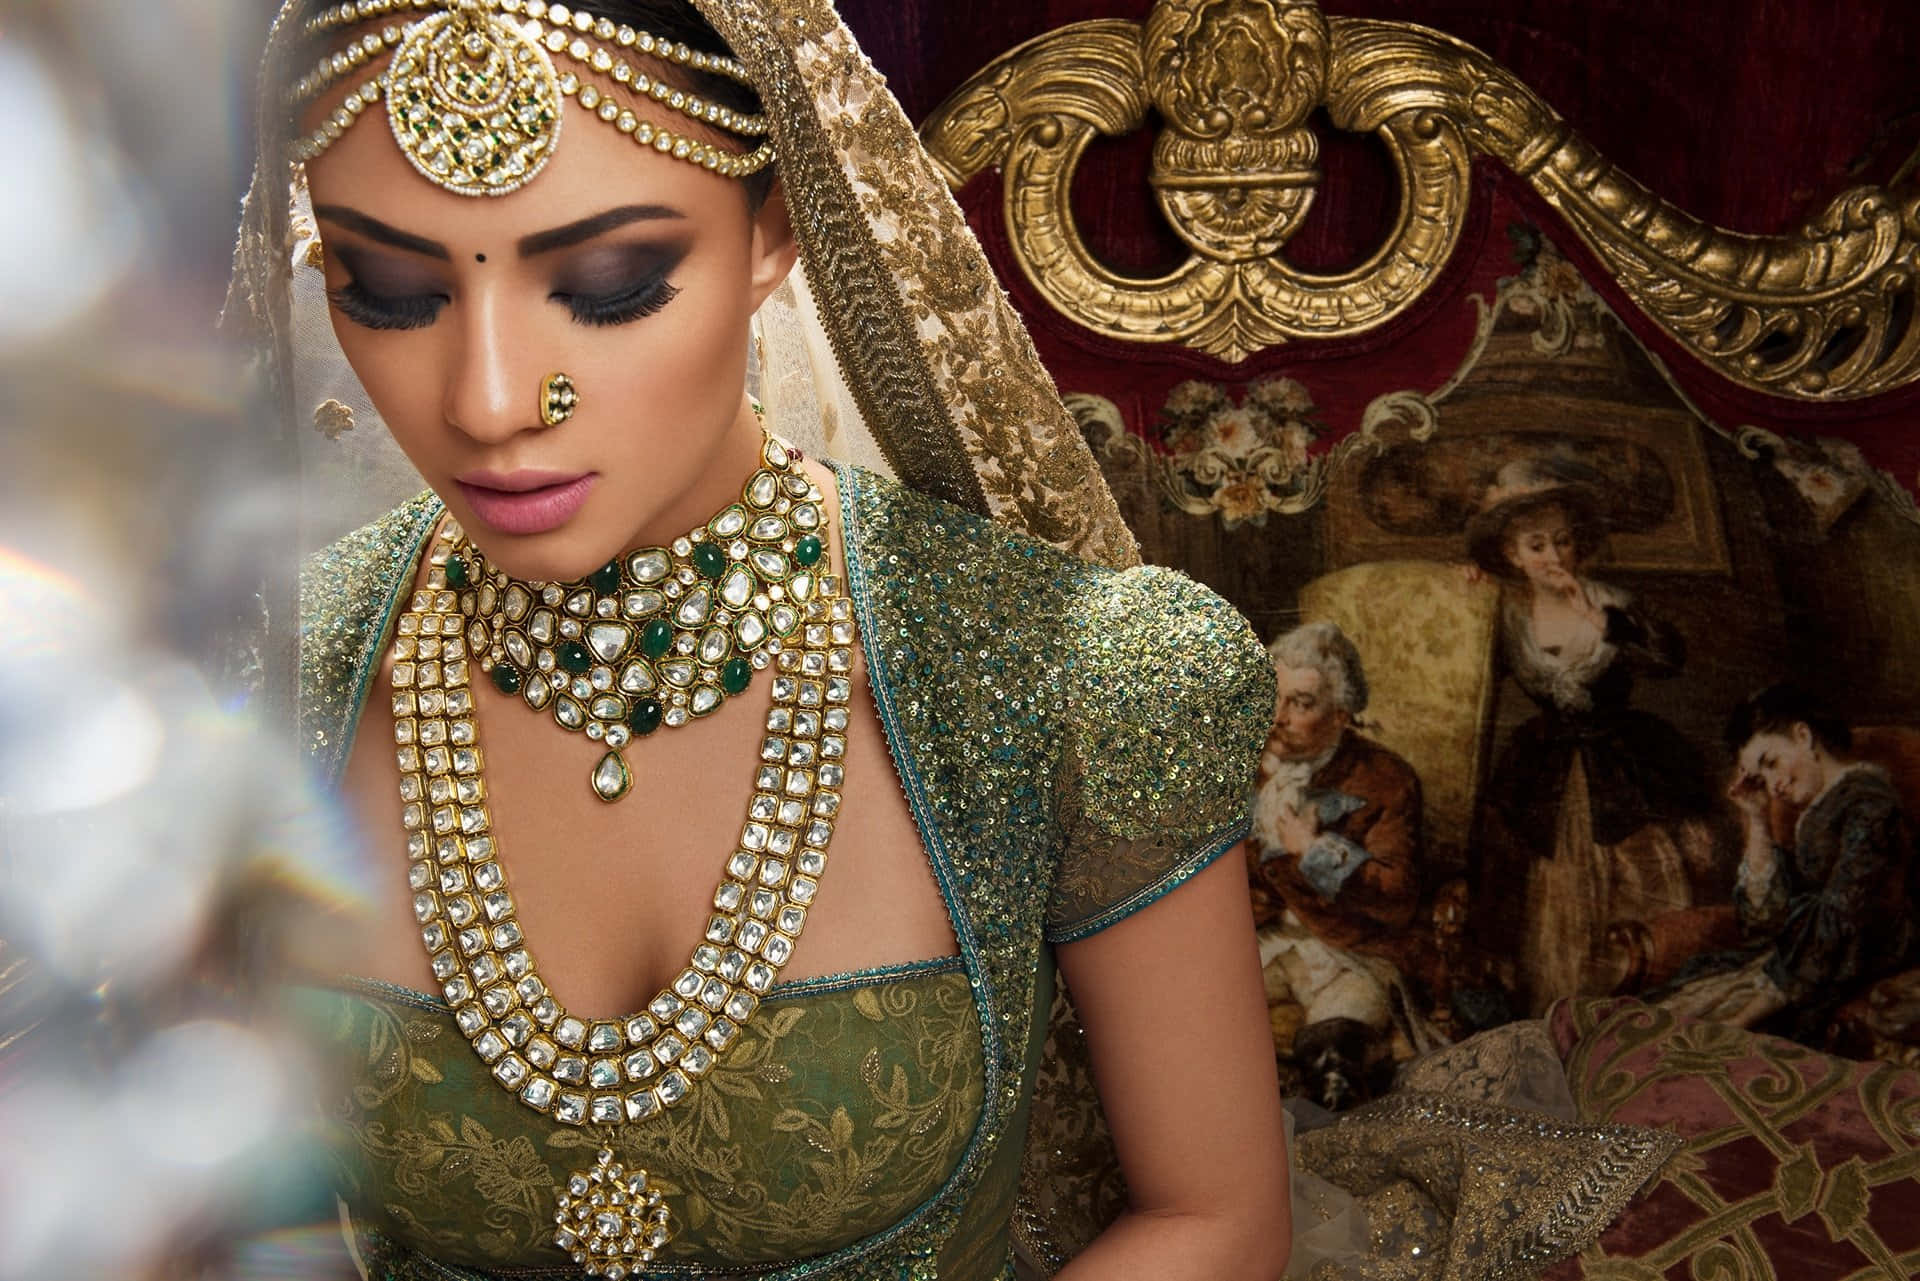 Imagende Una Novia India Con Un Vestido Verde Y Dorado.